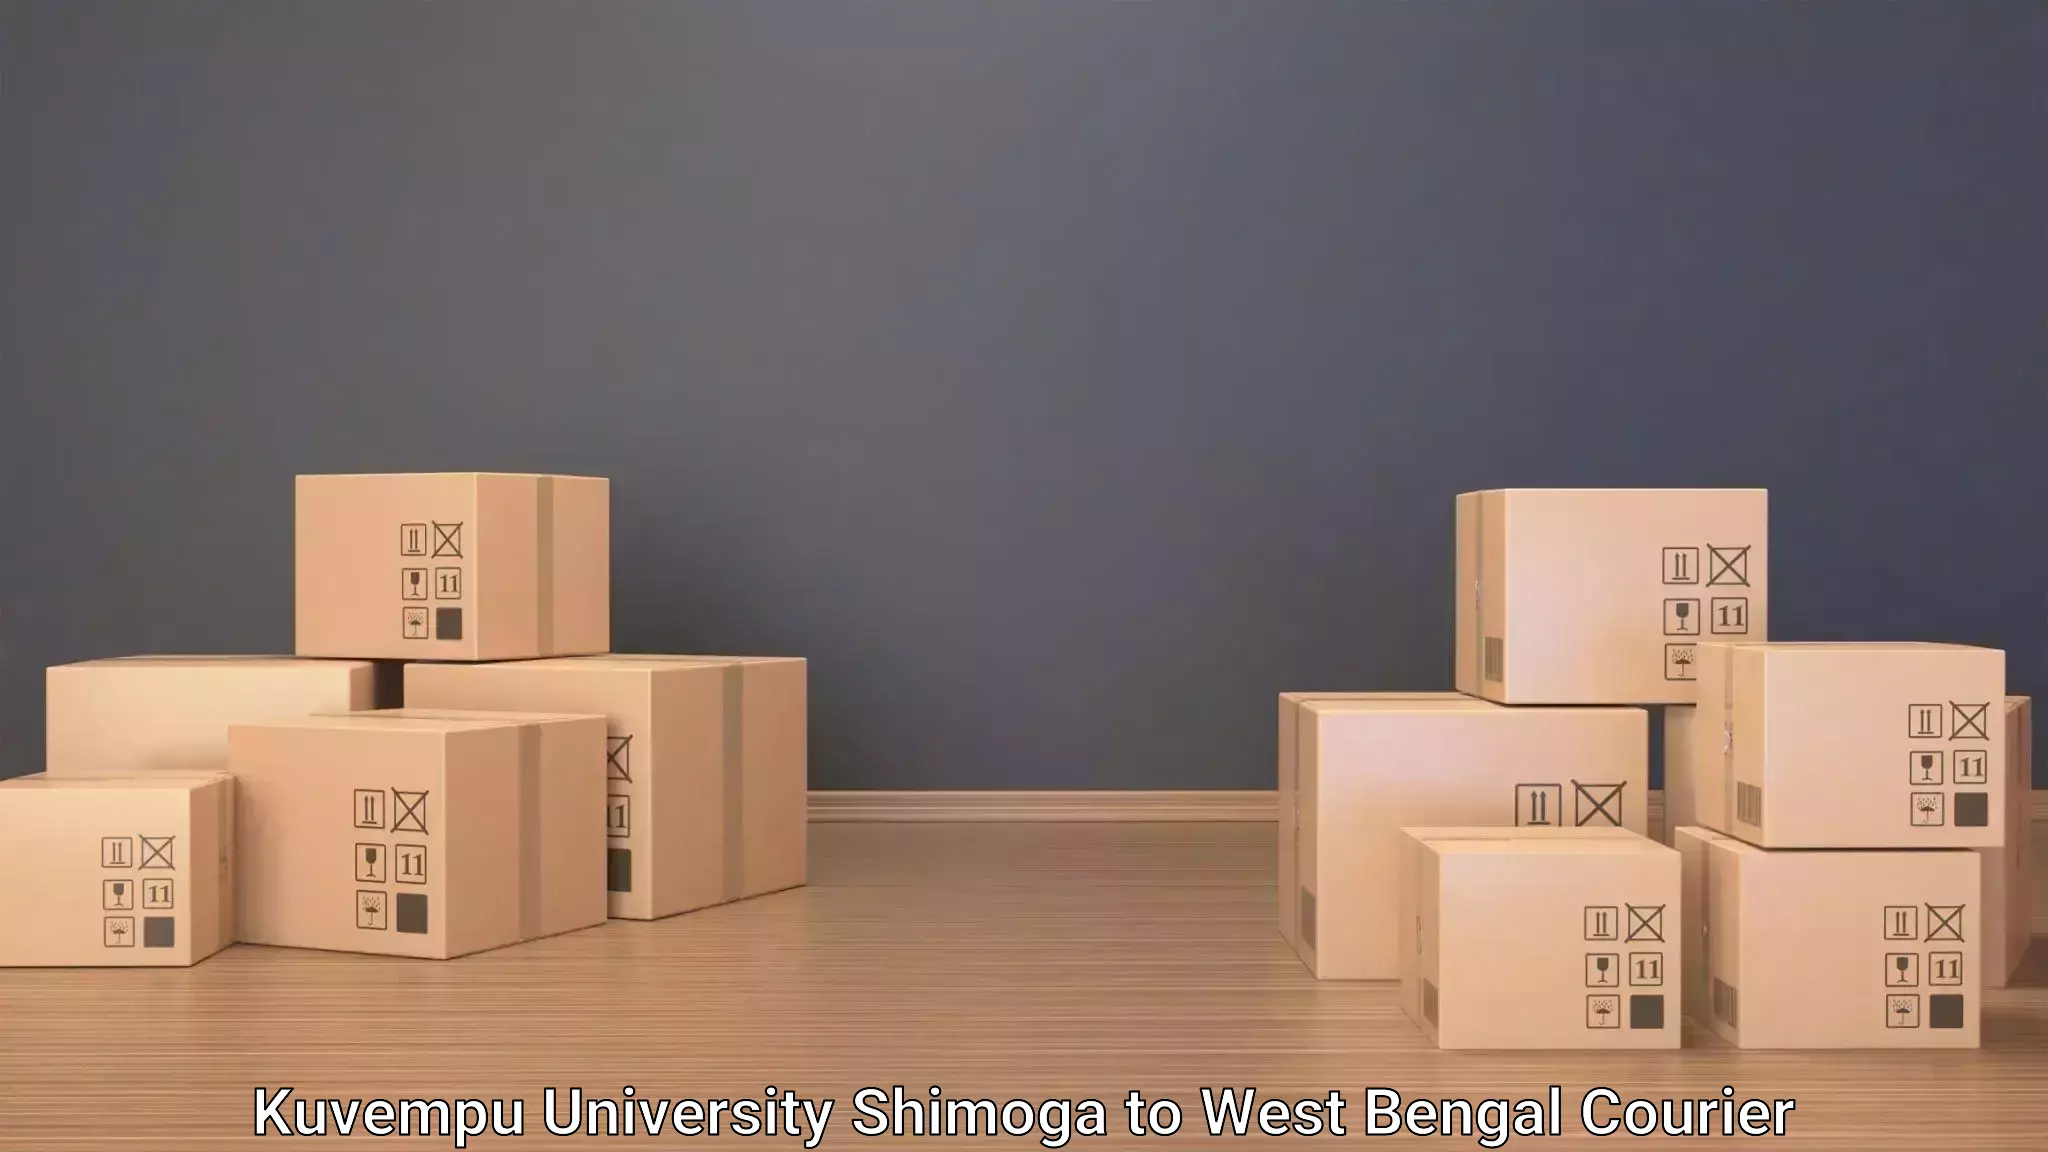 Baggage shipping service Kuvempu University Shimoga to Chittaranjan